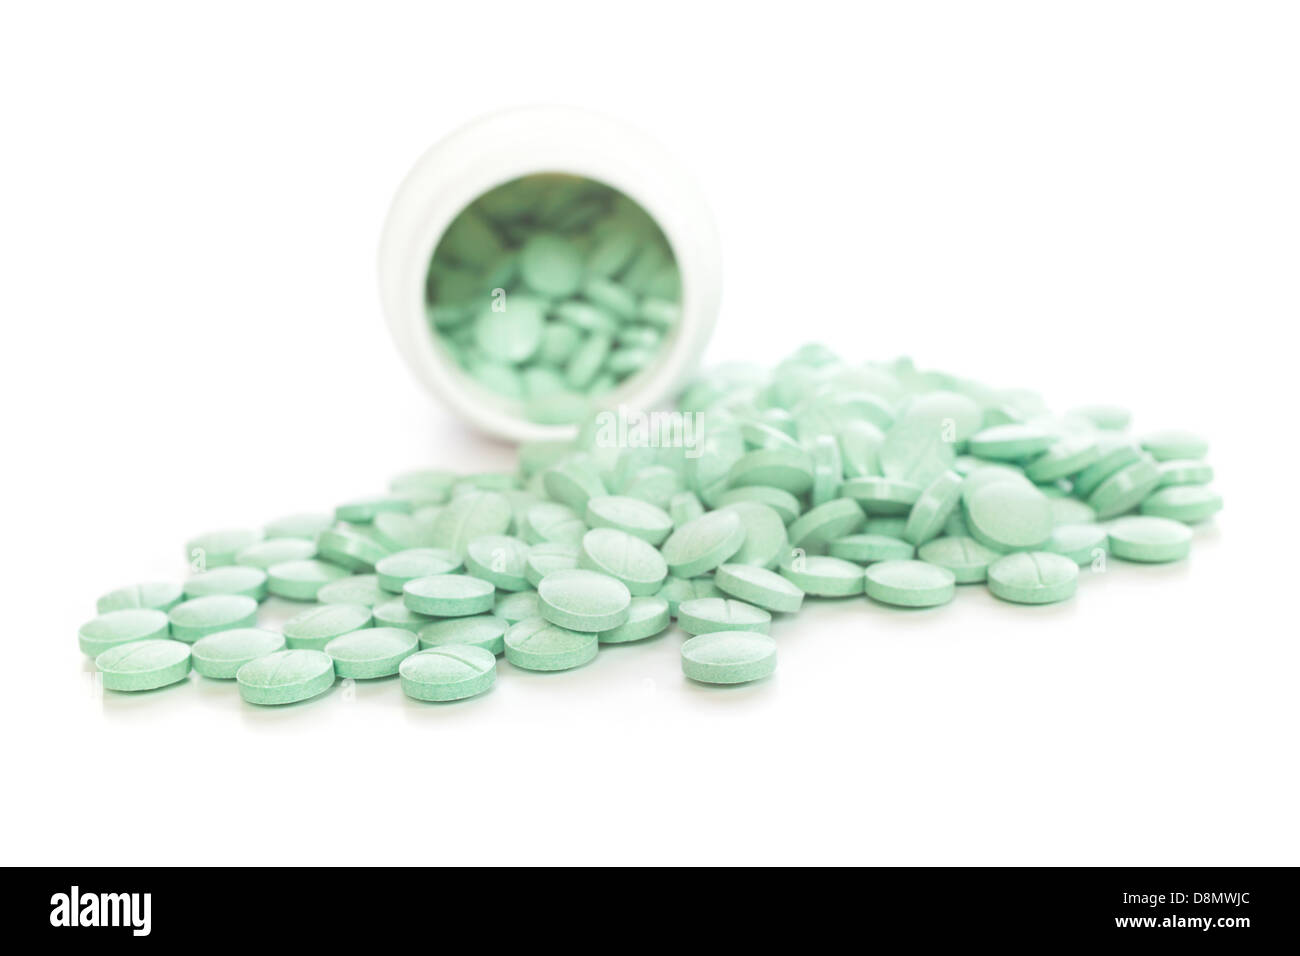 La prescrizione di farmaci - verde compresse la fuoriuscita di un bianco di plastica bottiglia di prescrizione. DOF poco profondo, messa a fuoco sul primo piano. Foto Stock